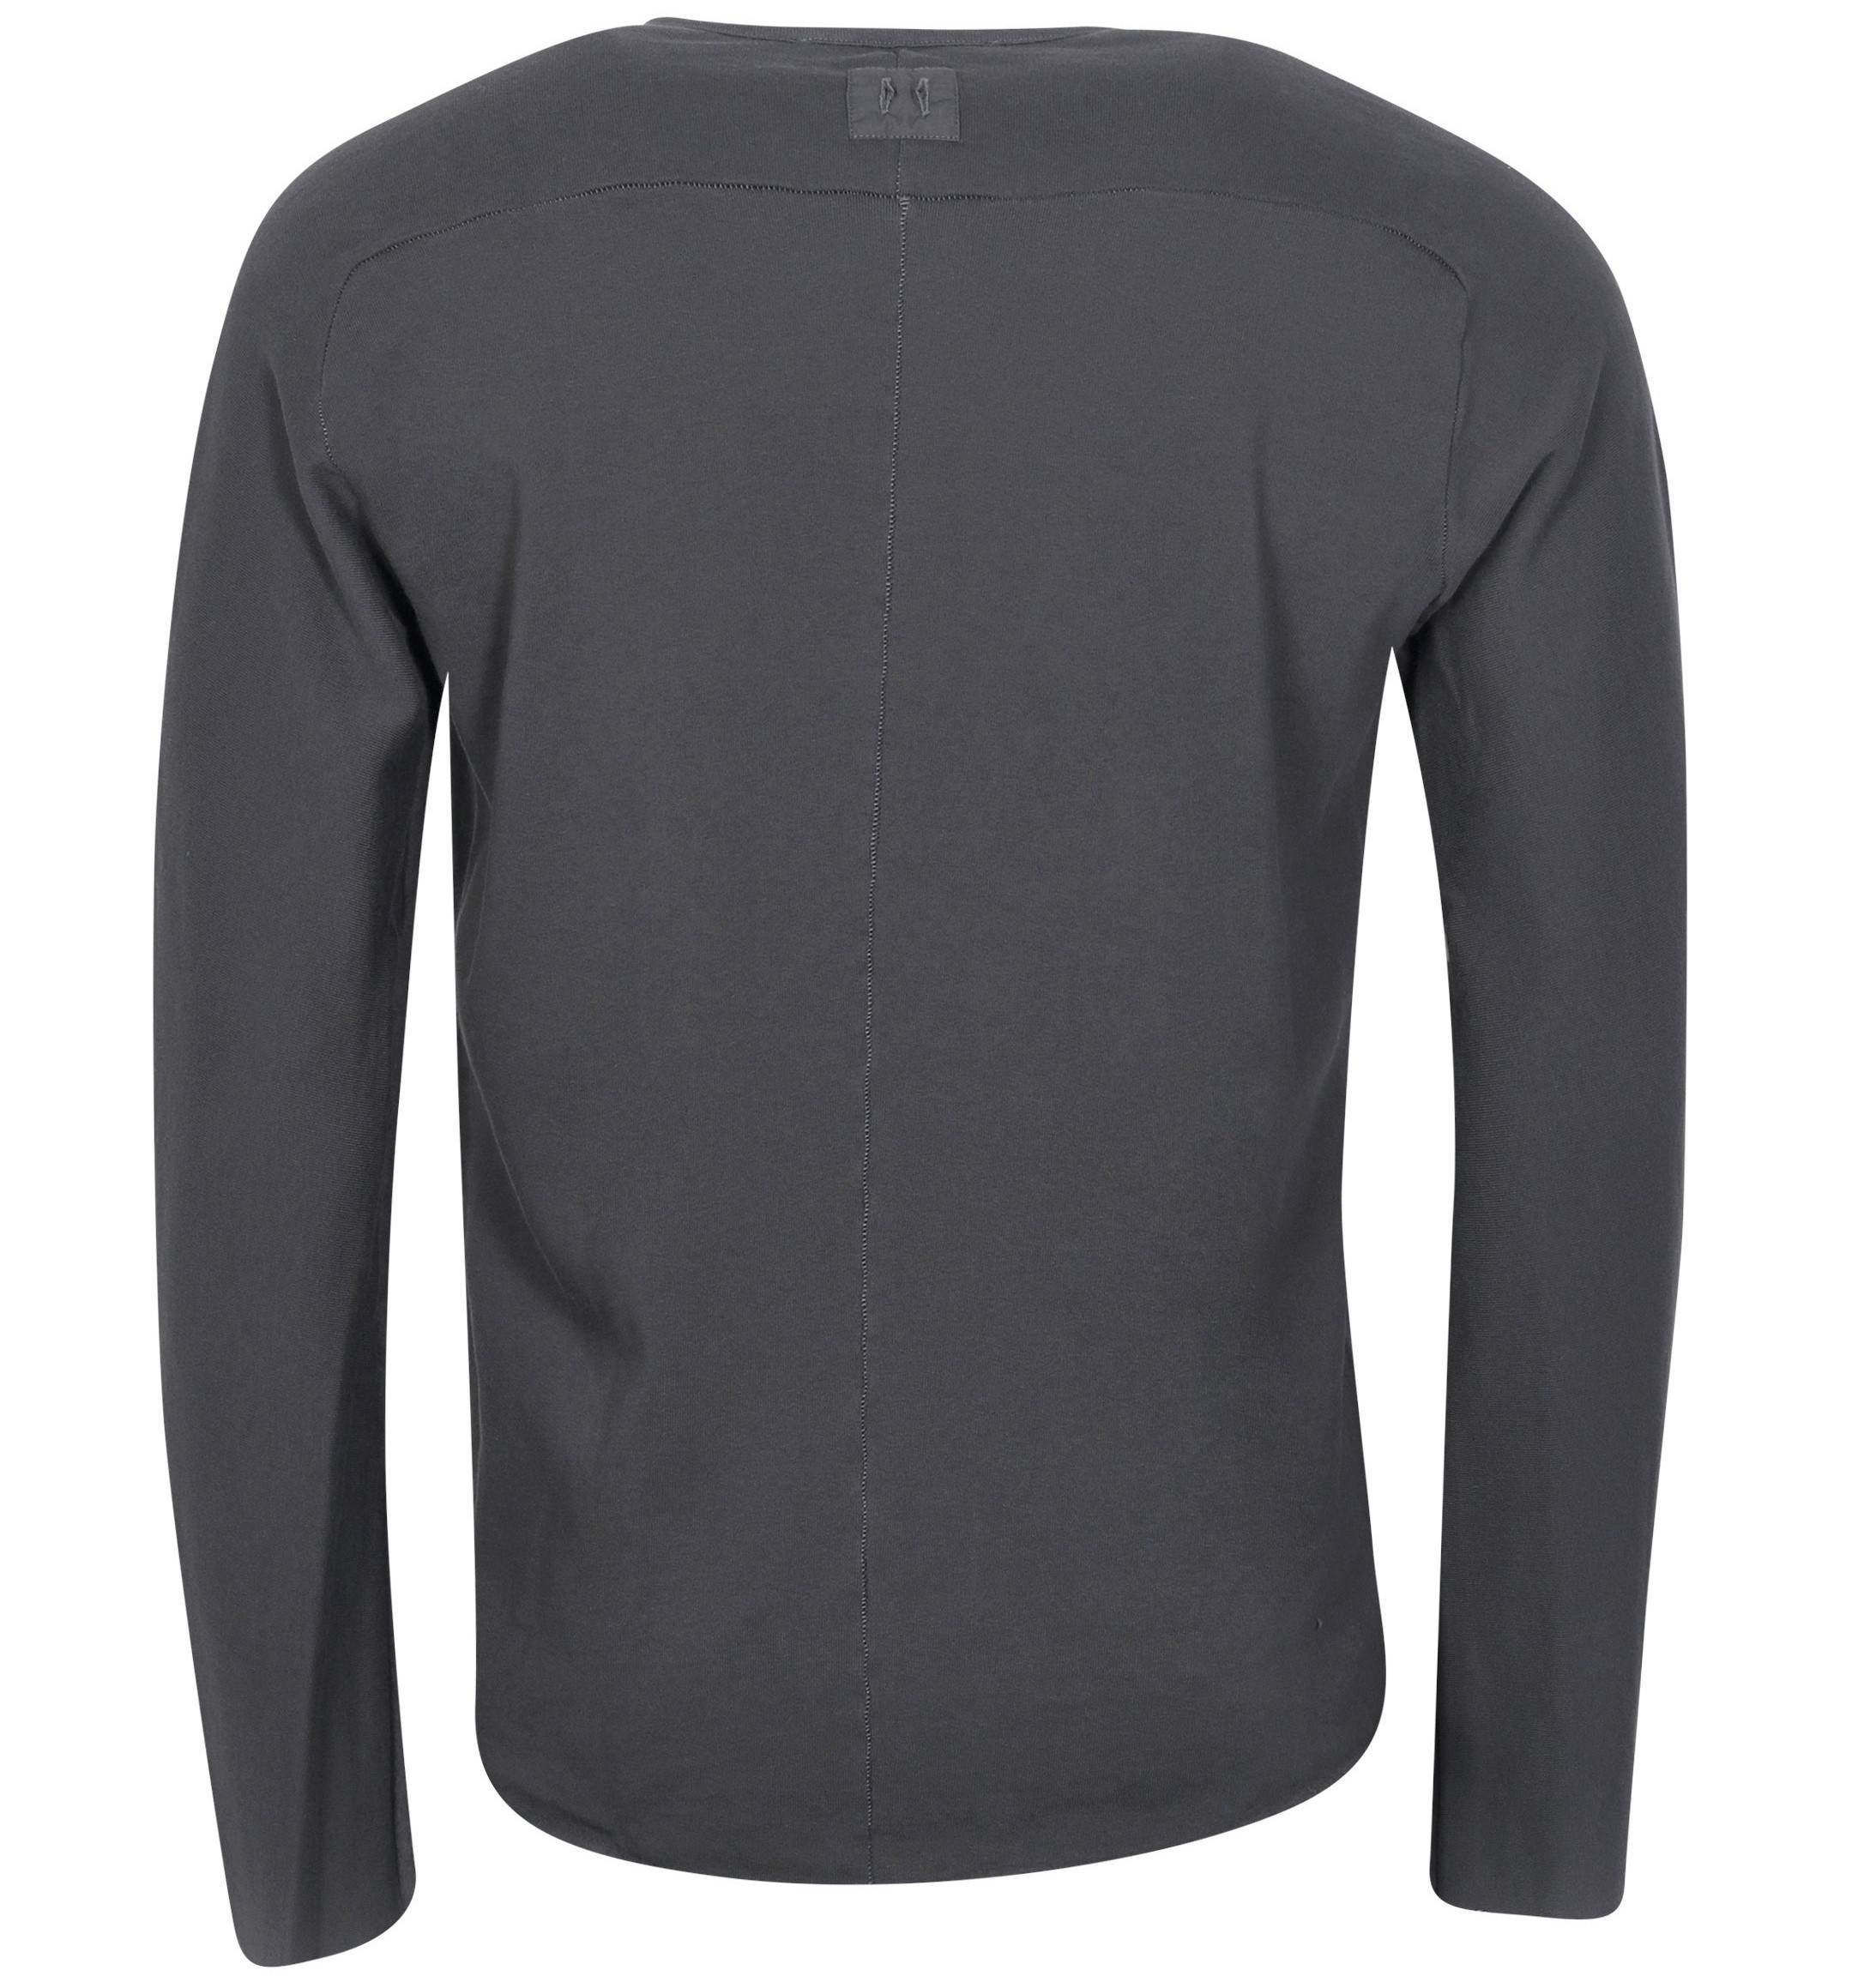 HANNES ROETHER Soft Cotton Sweatshirt in Dark Grey XL